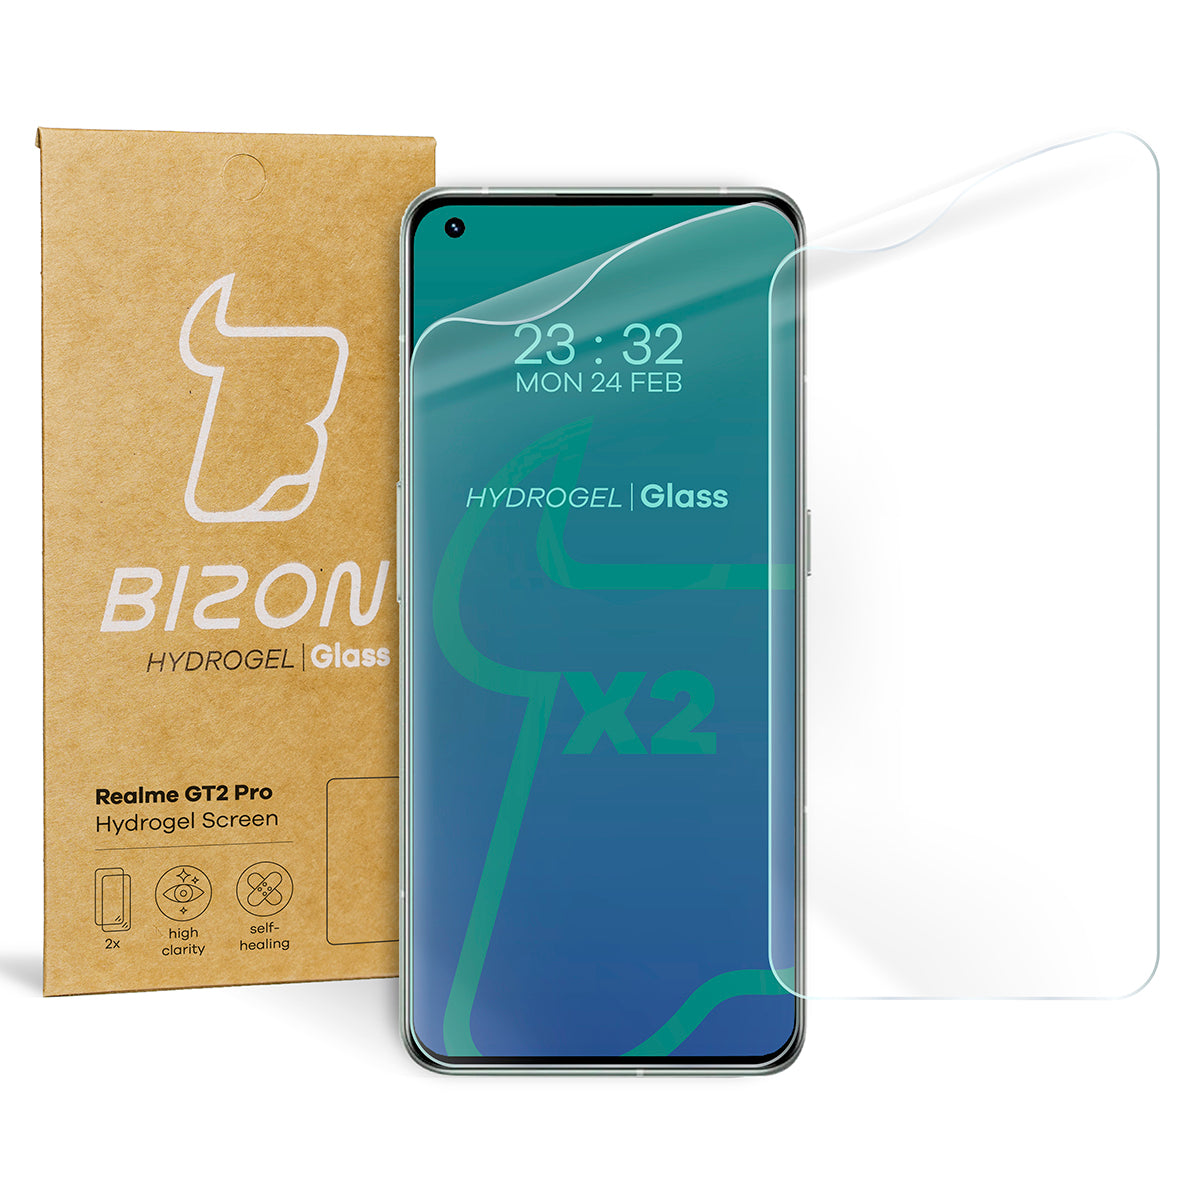 Hydrogel Folie für den Bildschirm Bizon Glass Hydrogel, Realme GT2 Pro, 2 Stück